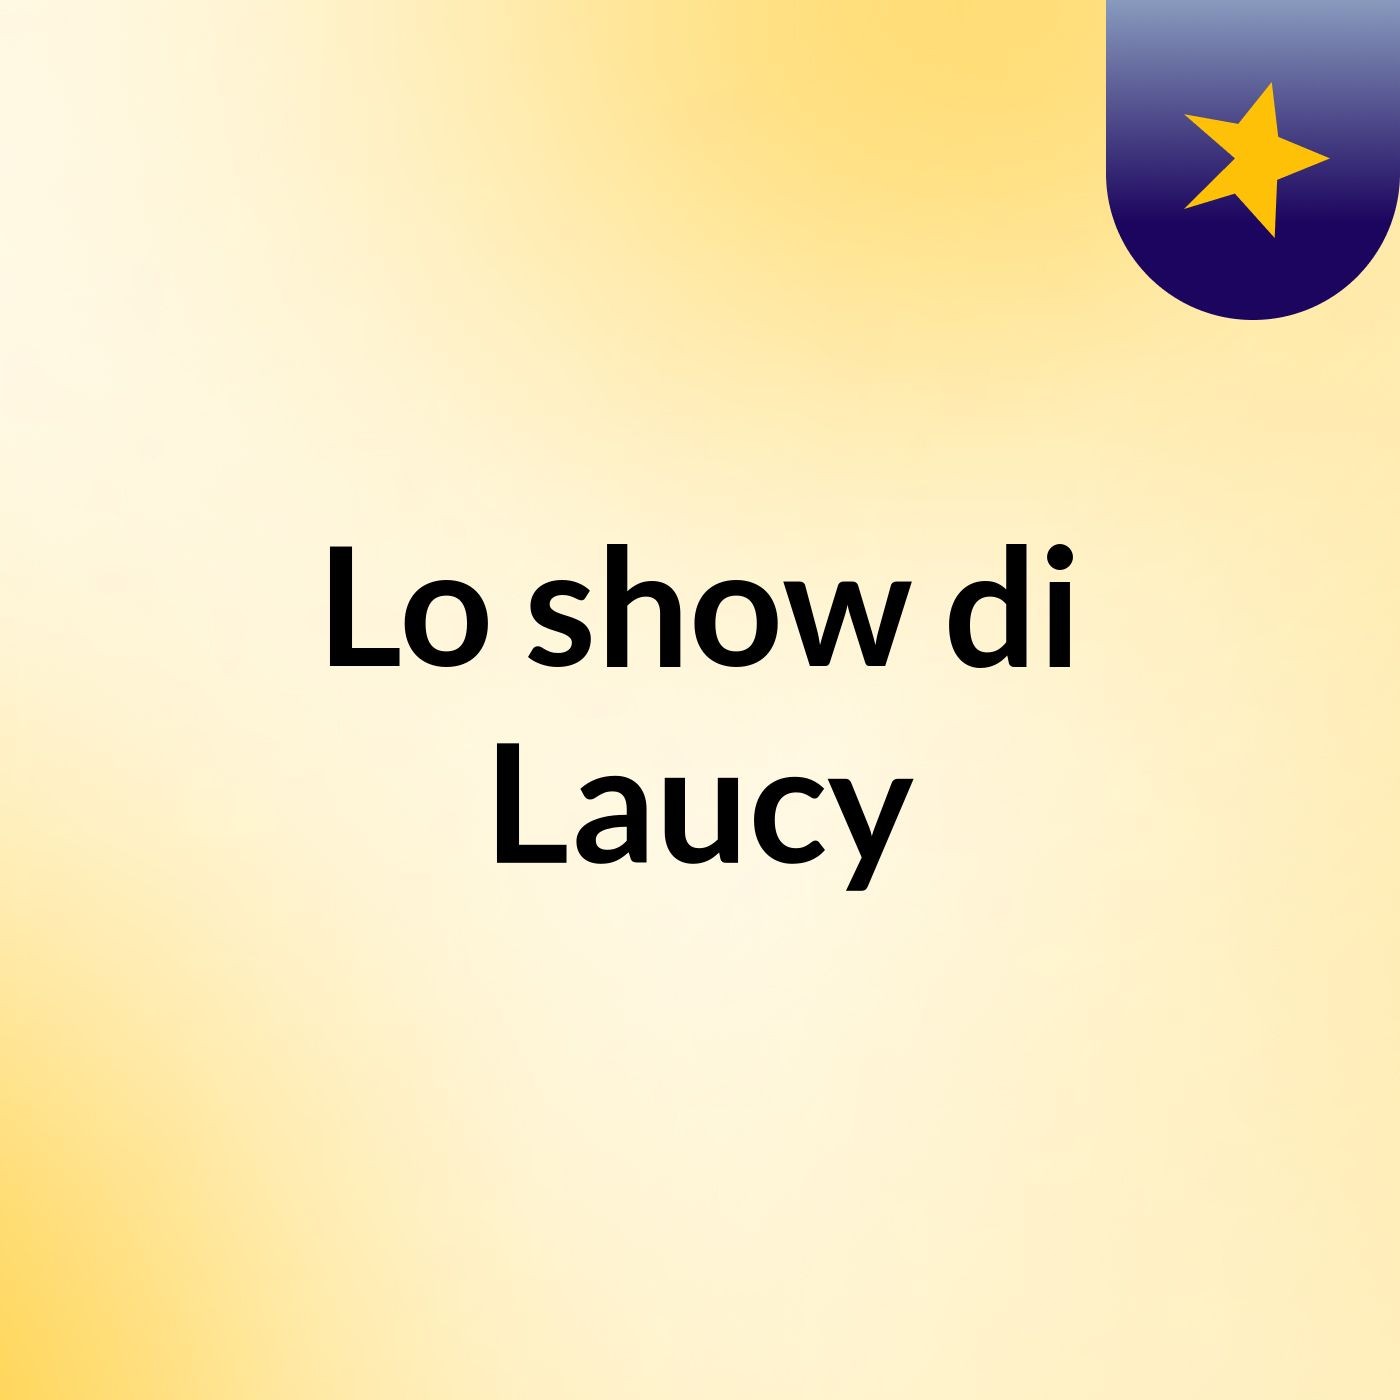 Lo show di Laucy